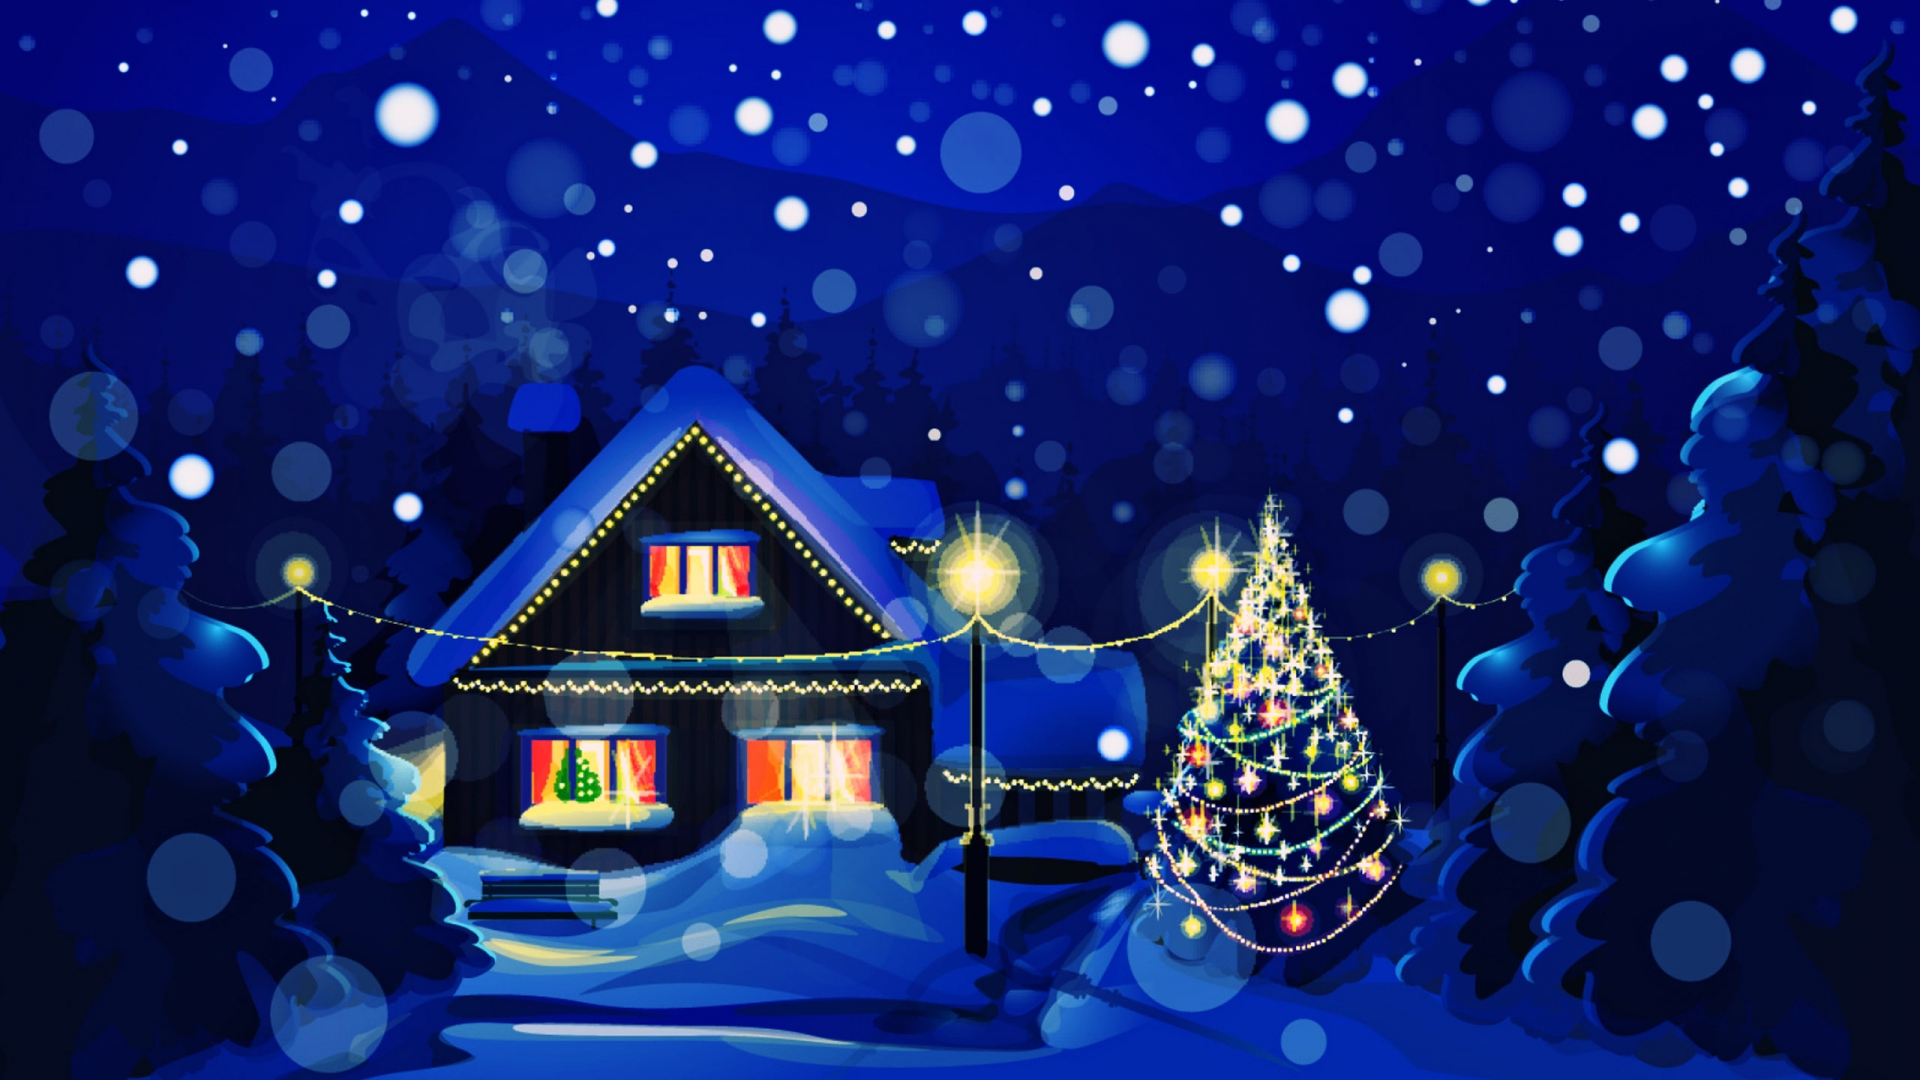 Christmas HD Wallpaper 1080p 1920x1080 - WallpaperSafari